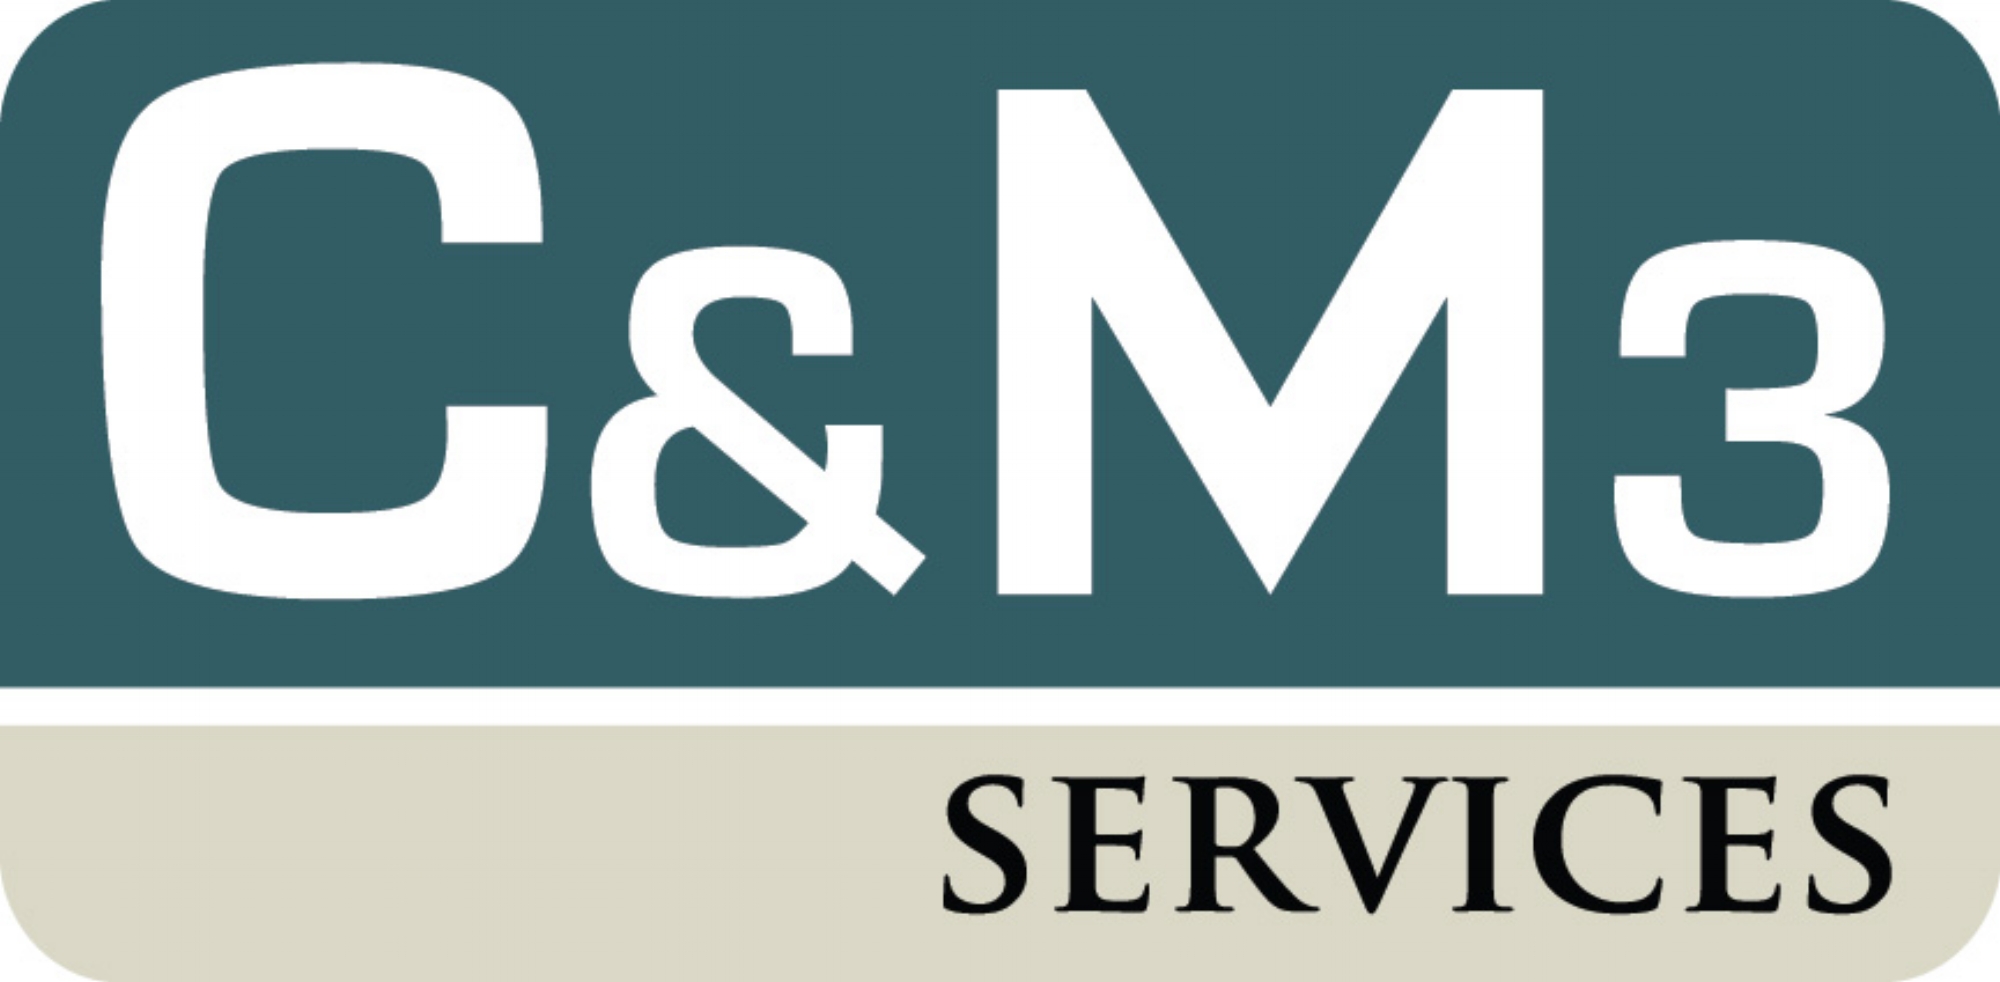 C&amp;M3 Services